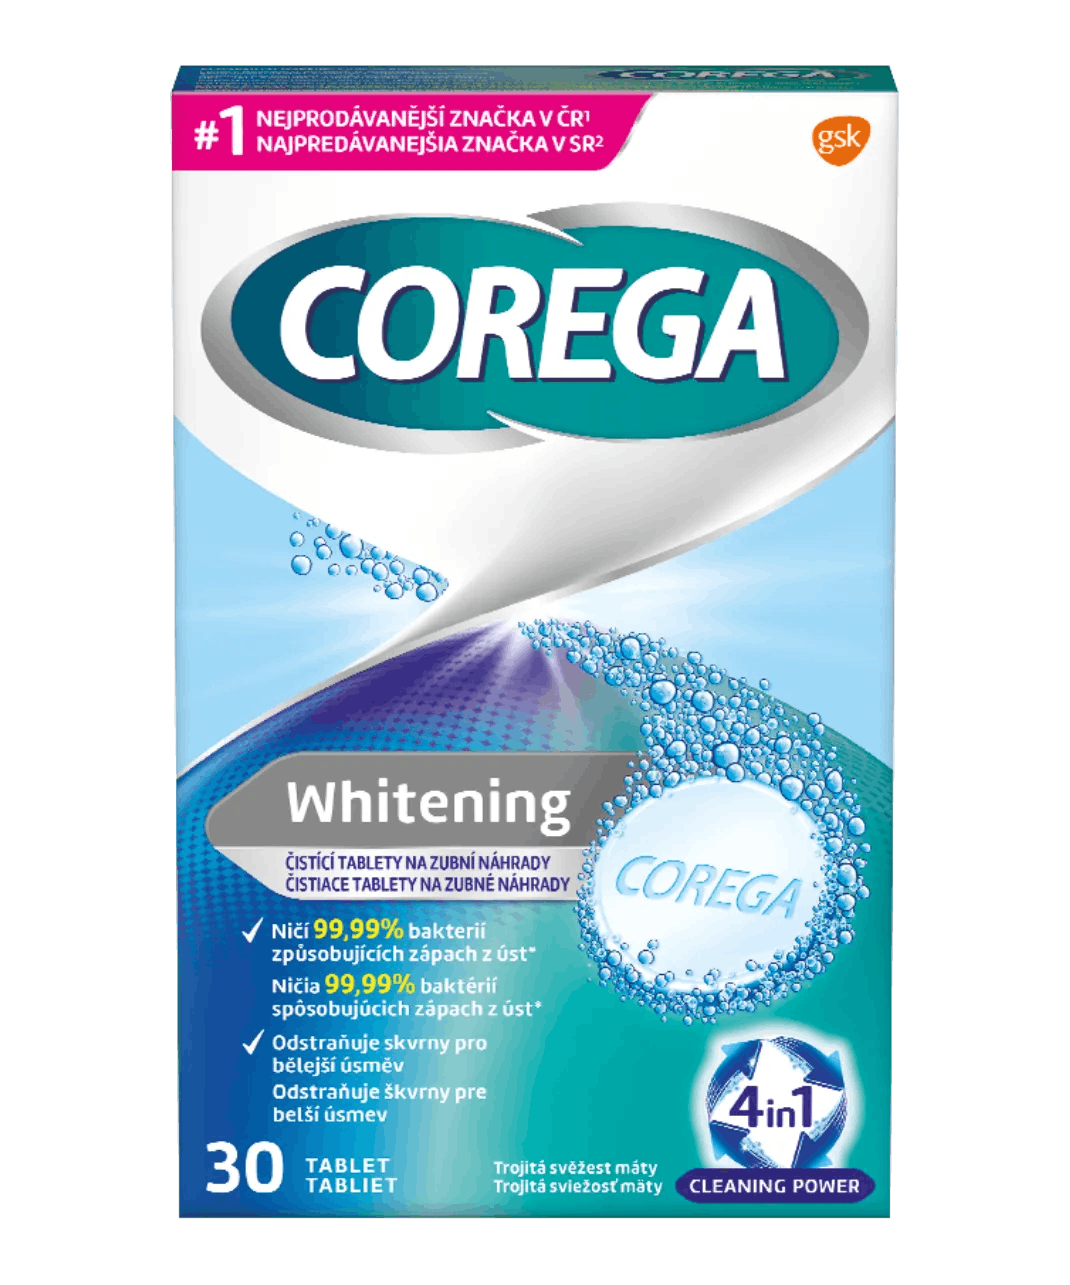 Corega® Whitening antibakteriální čisticí tablety na zubní náhrady.